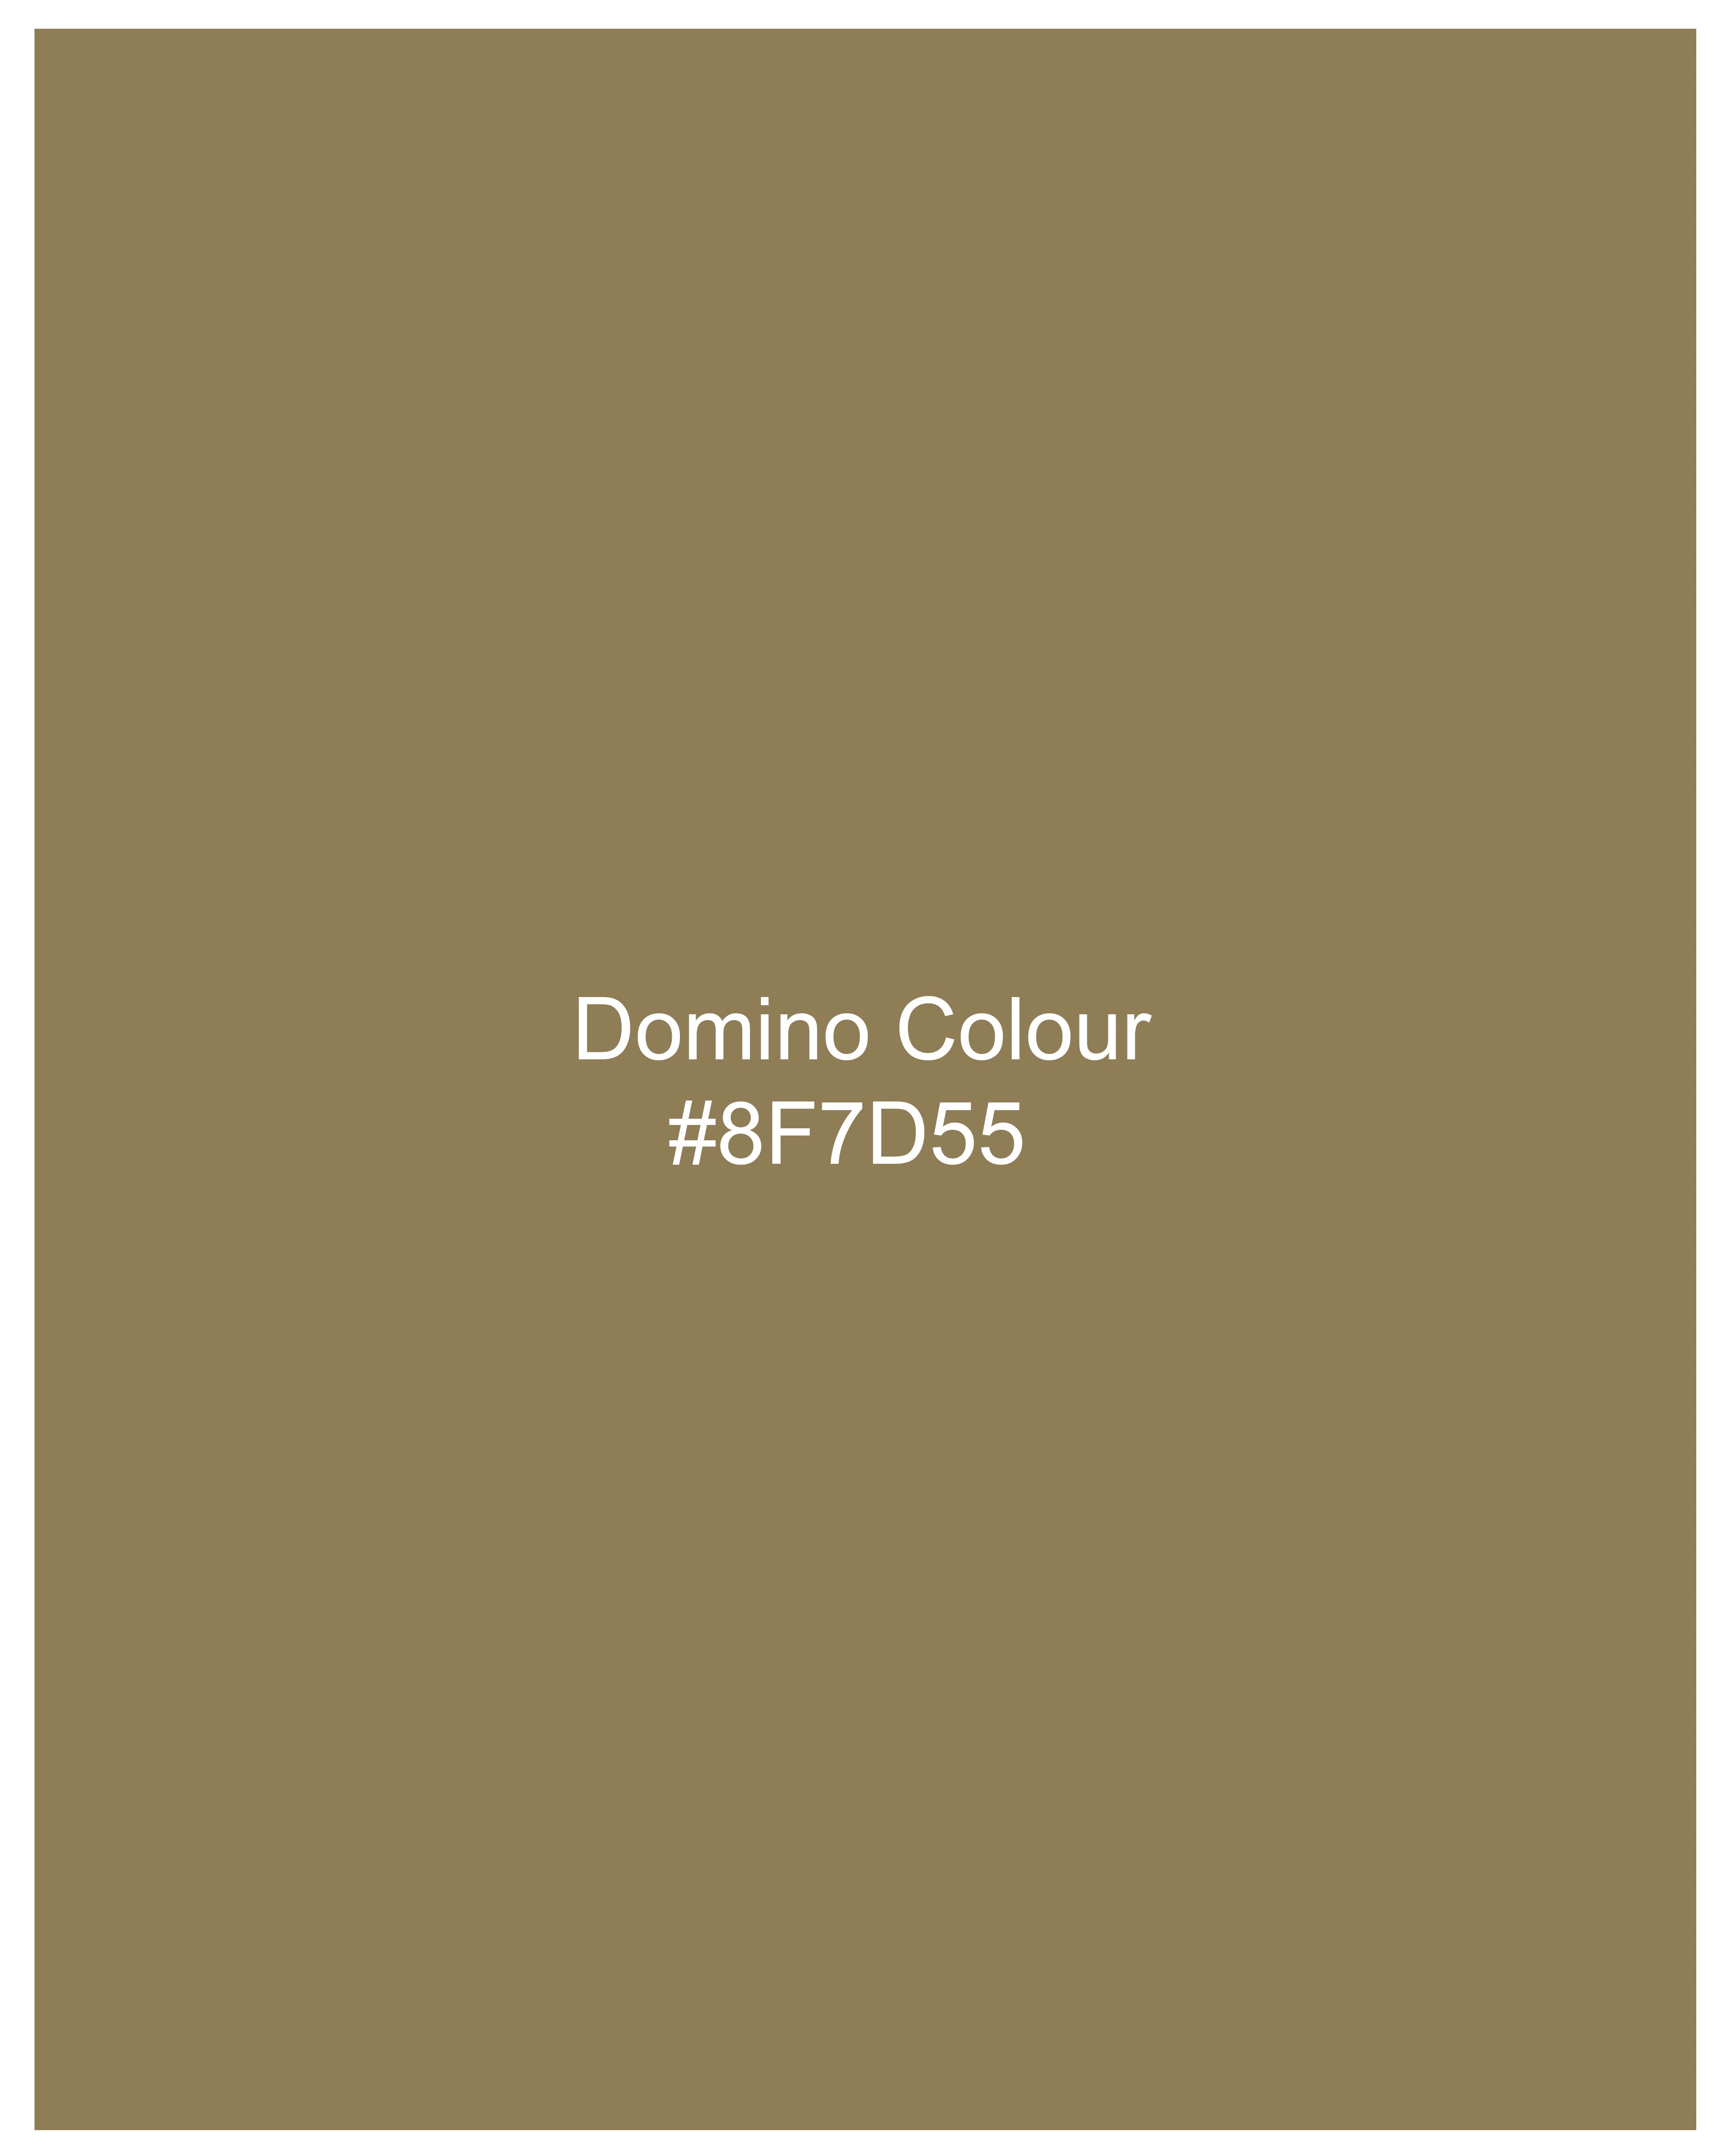 Domino Brown Super Soft Premium Cotton Button-Down Shirt 9976-BD-38, 9976-BD-H-38, 9976-BD-39, 9976-BD-H-39, 9976-BD-40, 9976-BD-H-40, 9976-BD-42, 9976-BD-H-42, 9976-BD-44, 9976-BD-H-44, 9976-BD-46, 9976-BD-H-46, 9976-BD-48, 9976-BD-H-48, 9976-BD-50, 9976-BD-H-50, 9976-BD-52, 9976-BD-H-52